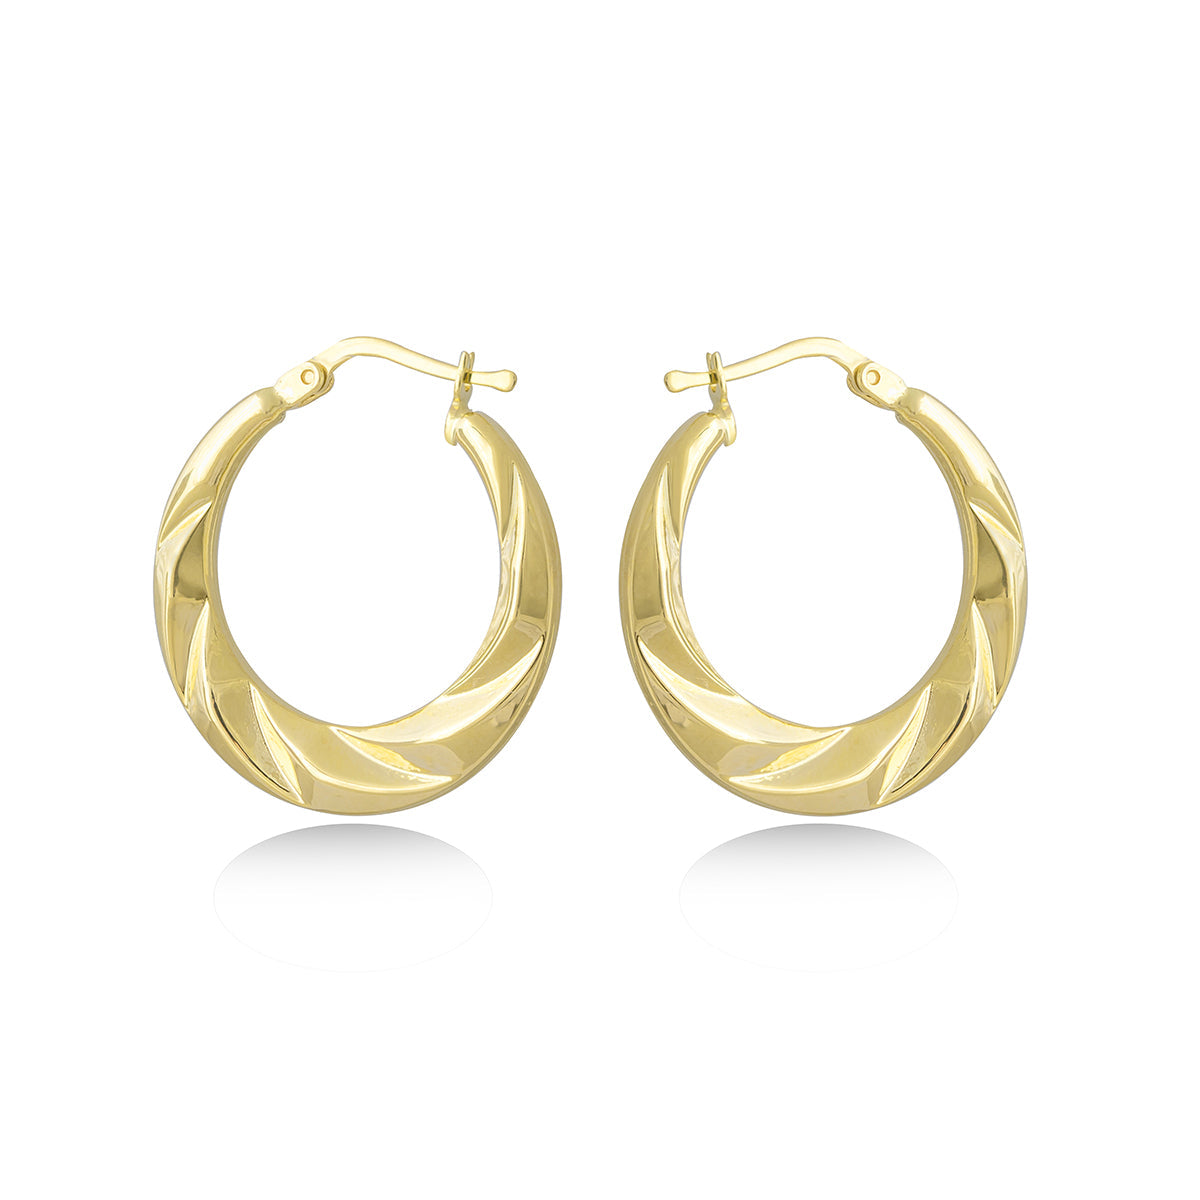 Twist Hoop Earrings in 18k Yellow Gold